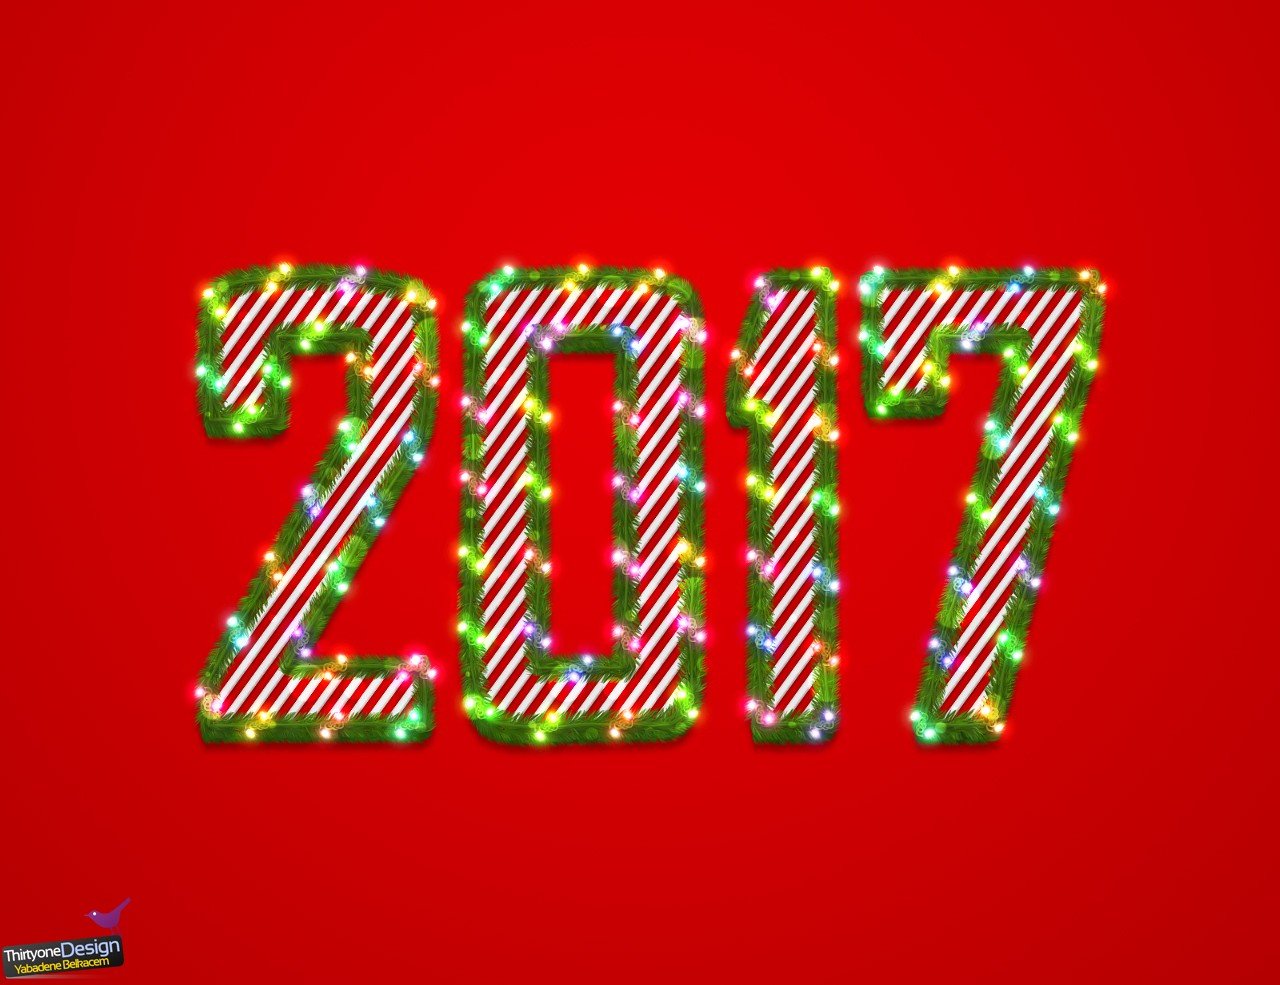 holiday, 2017 (Year), Christmas ornaments Wallpaper